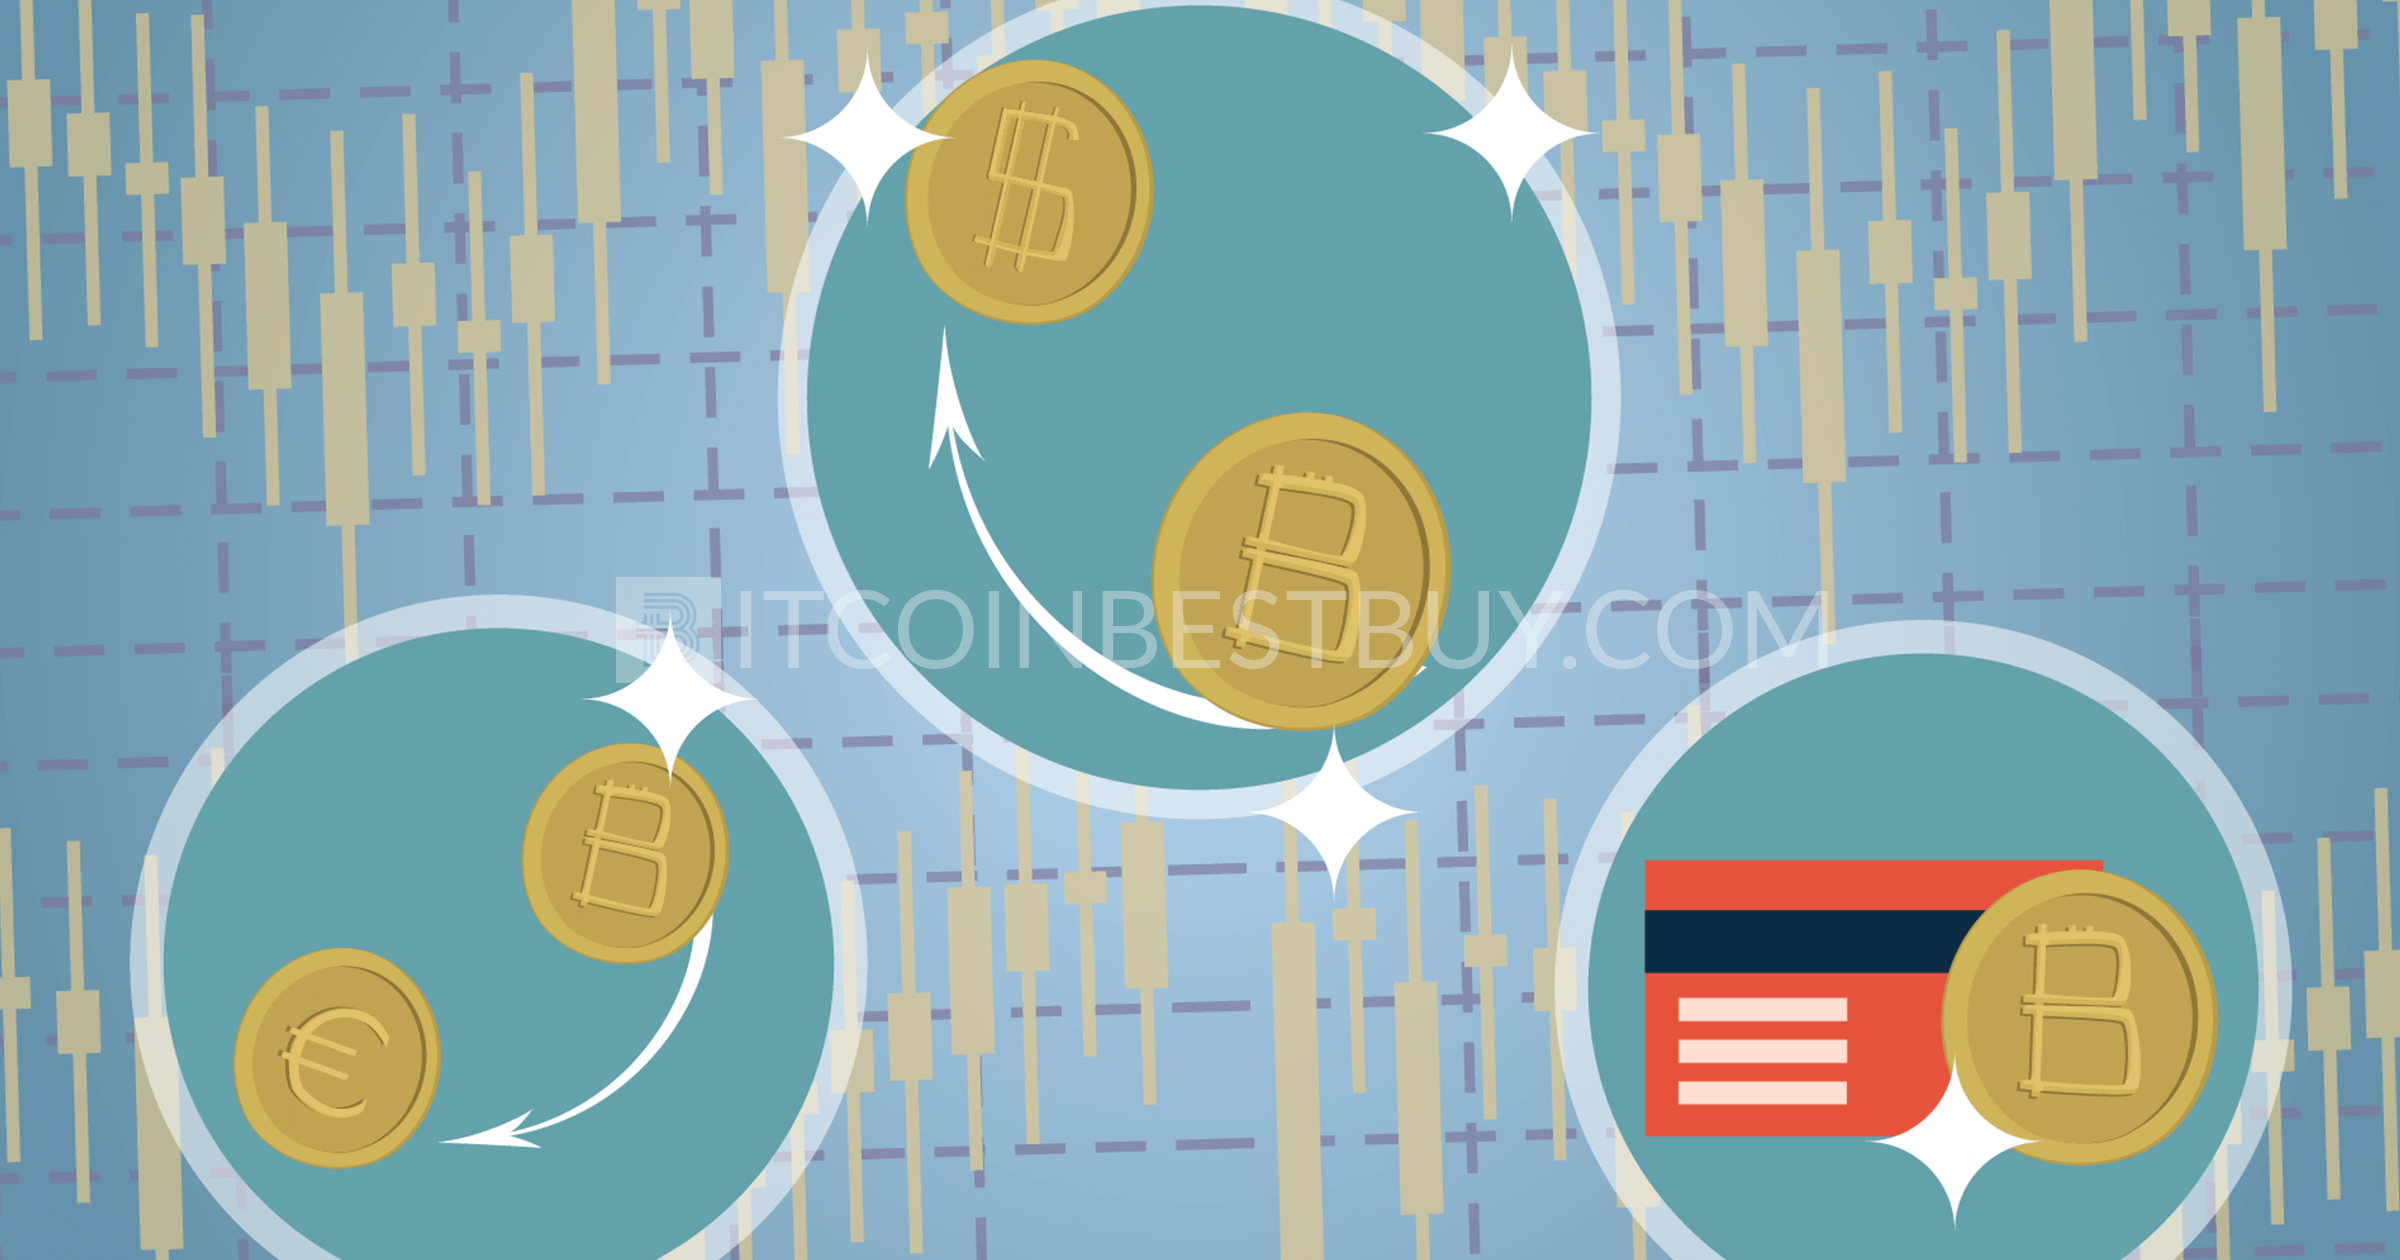 Bitcoin prekyba vs forex ar galite užsidirbti bitkoinų į pinigus kaip investuoti pinigus 1 metus